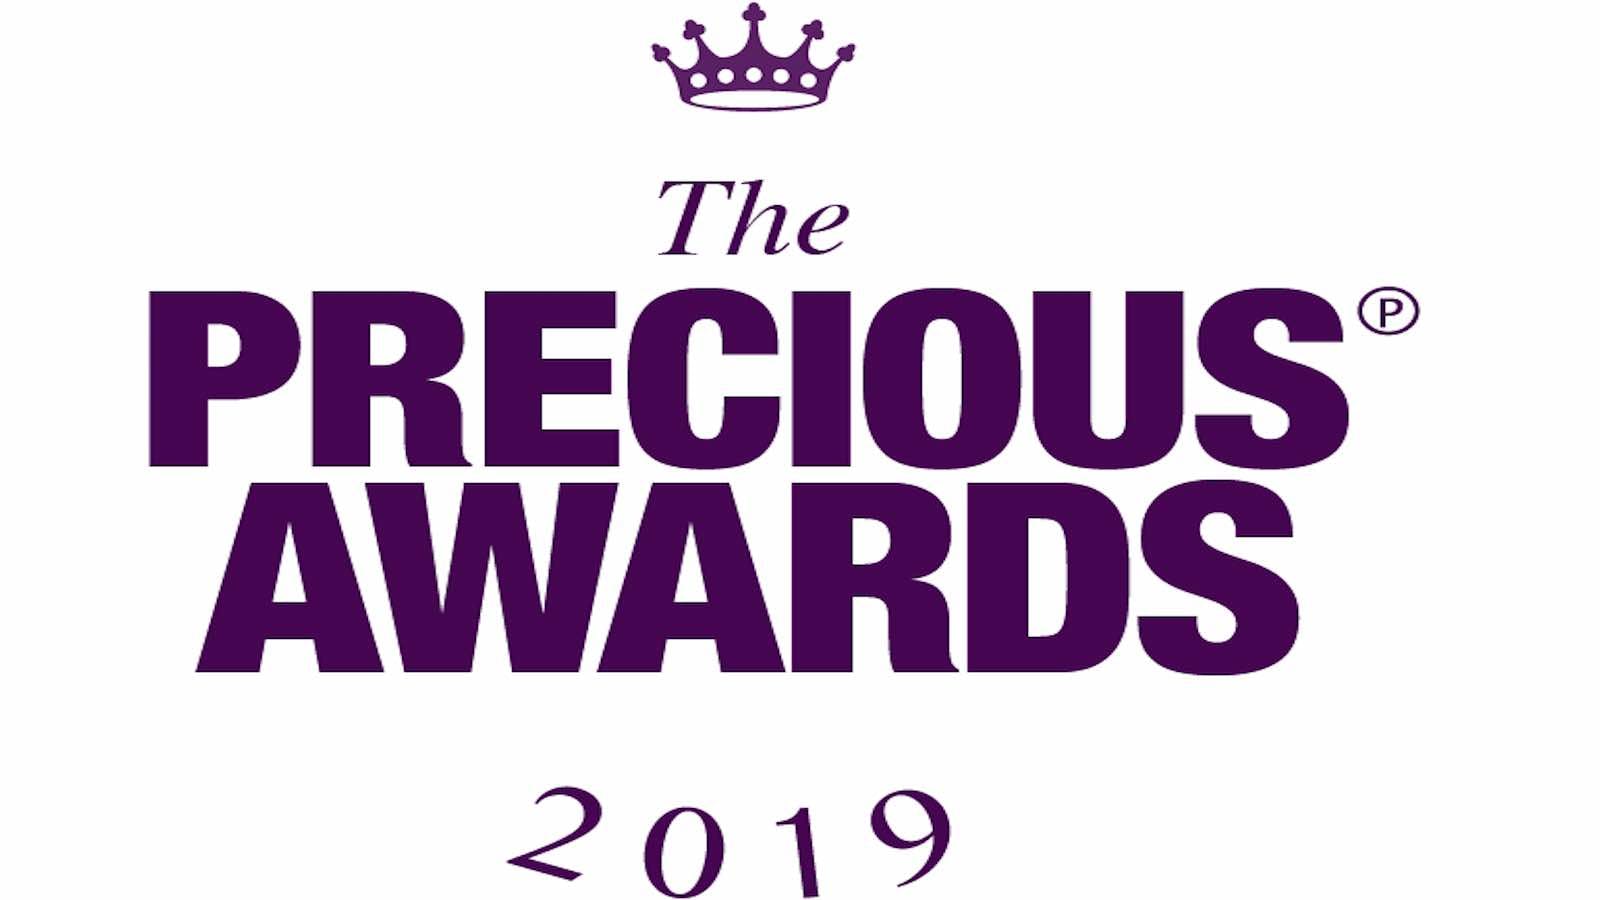 The Precious Awards logo 2019